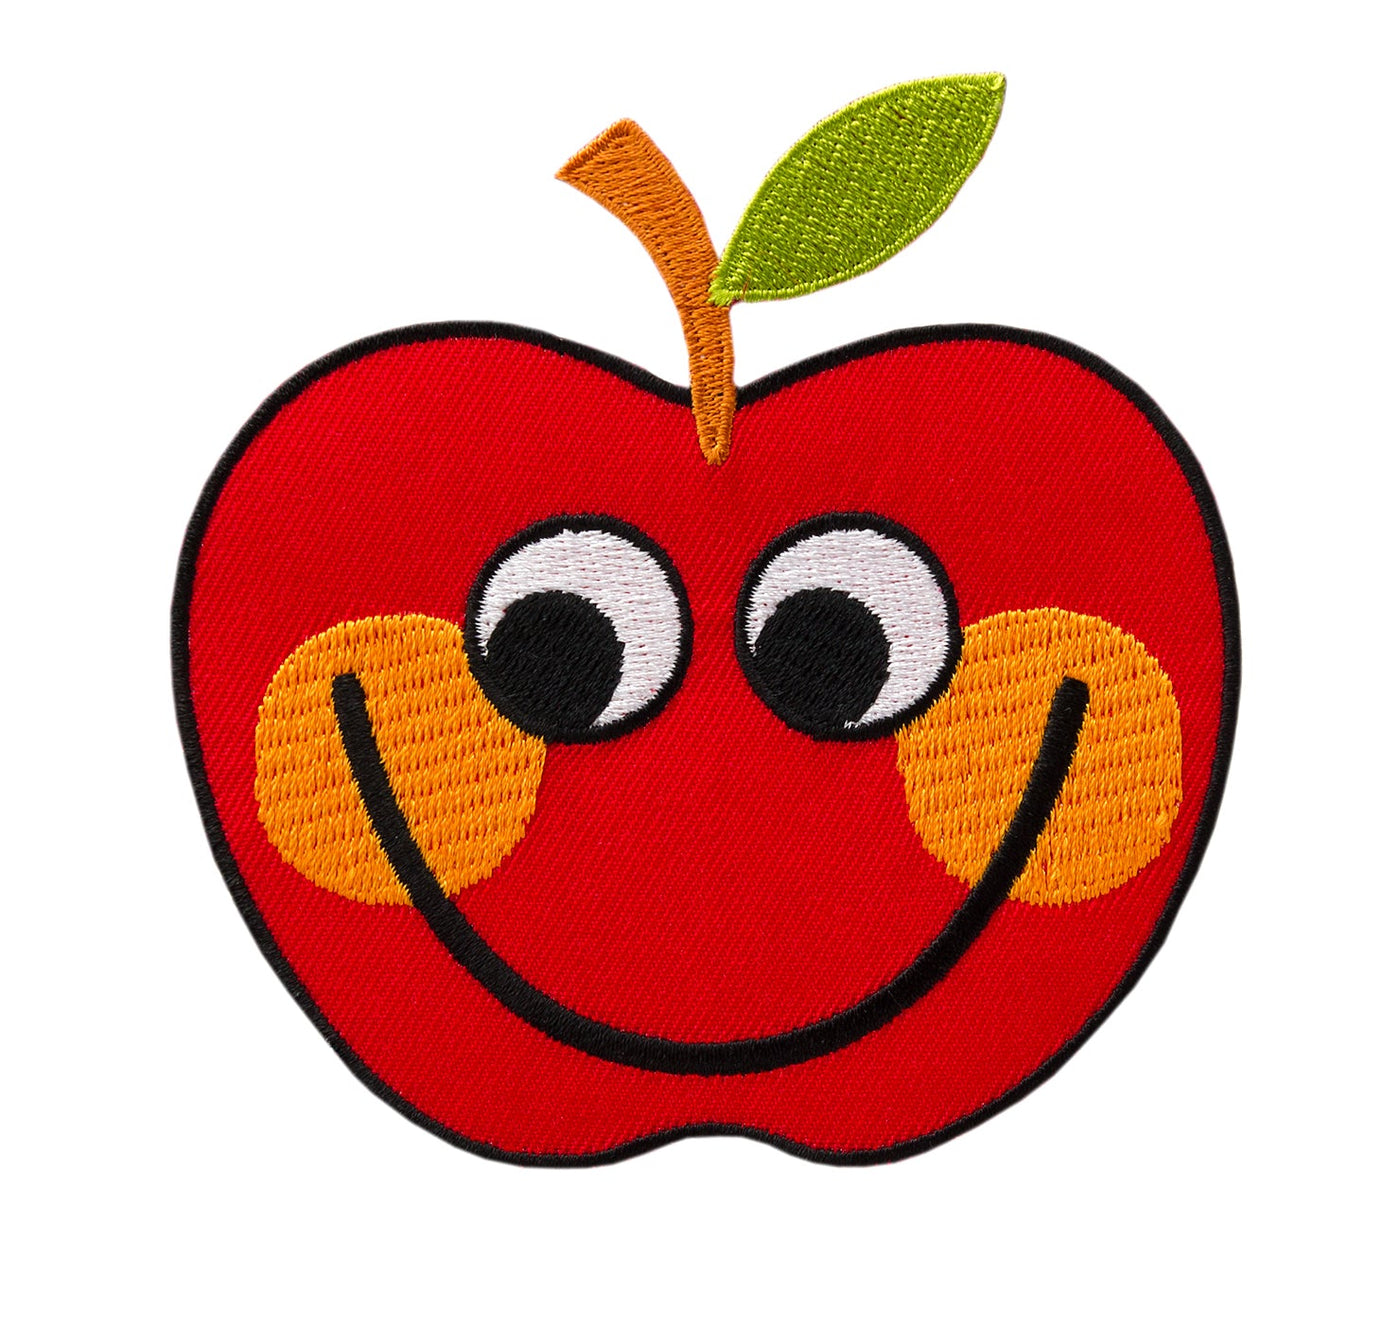 Applikationen - Kids and Hits - aufbügelbar Apfel mit Gesicht ca. 9,5x10,0 cm farbig